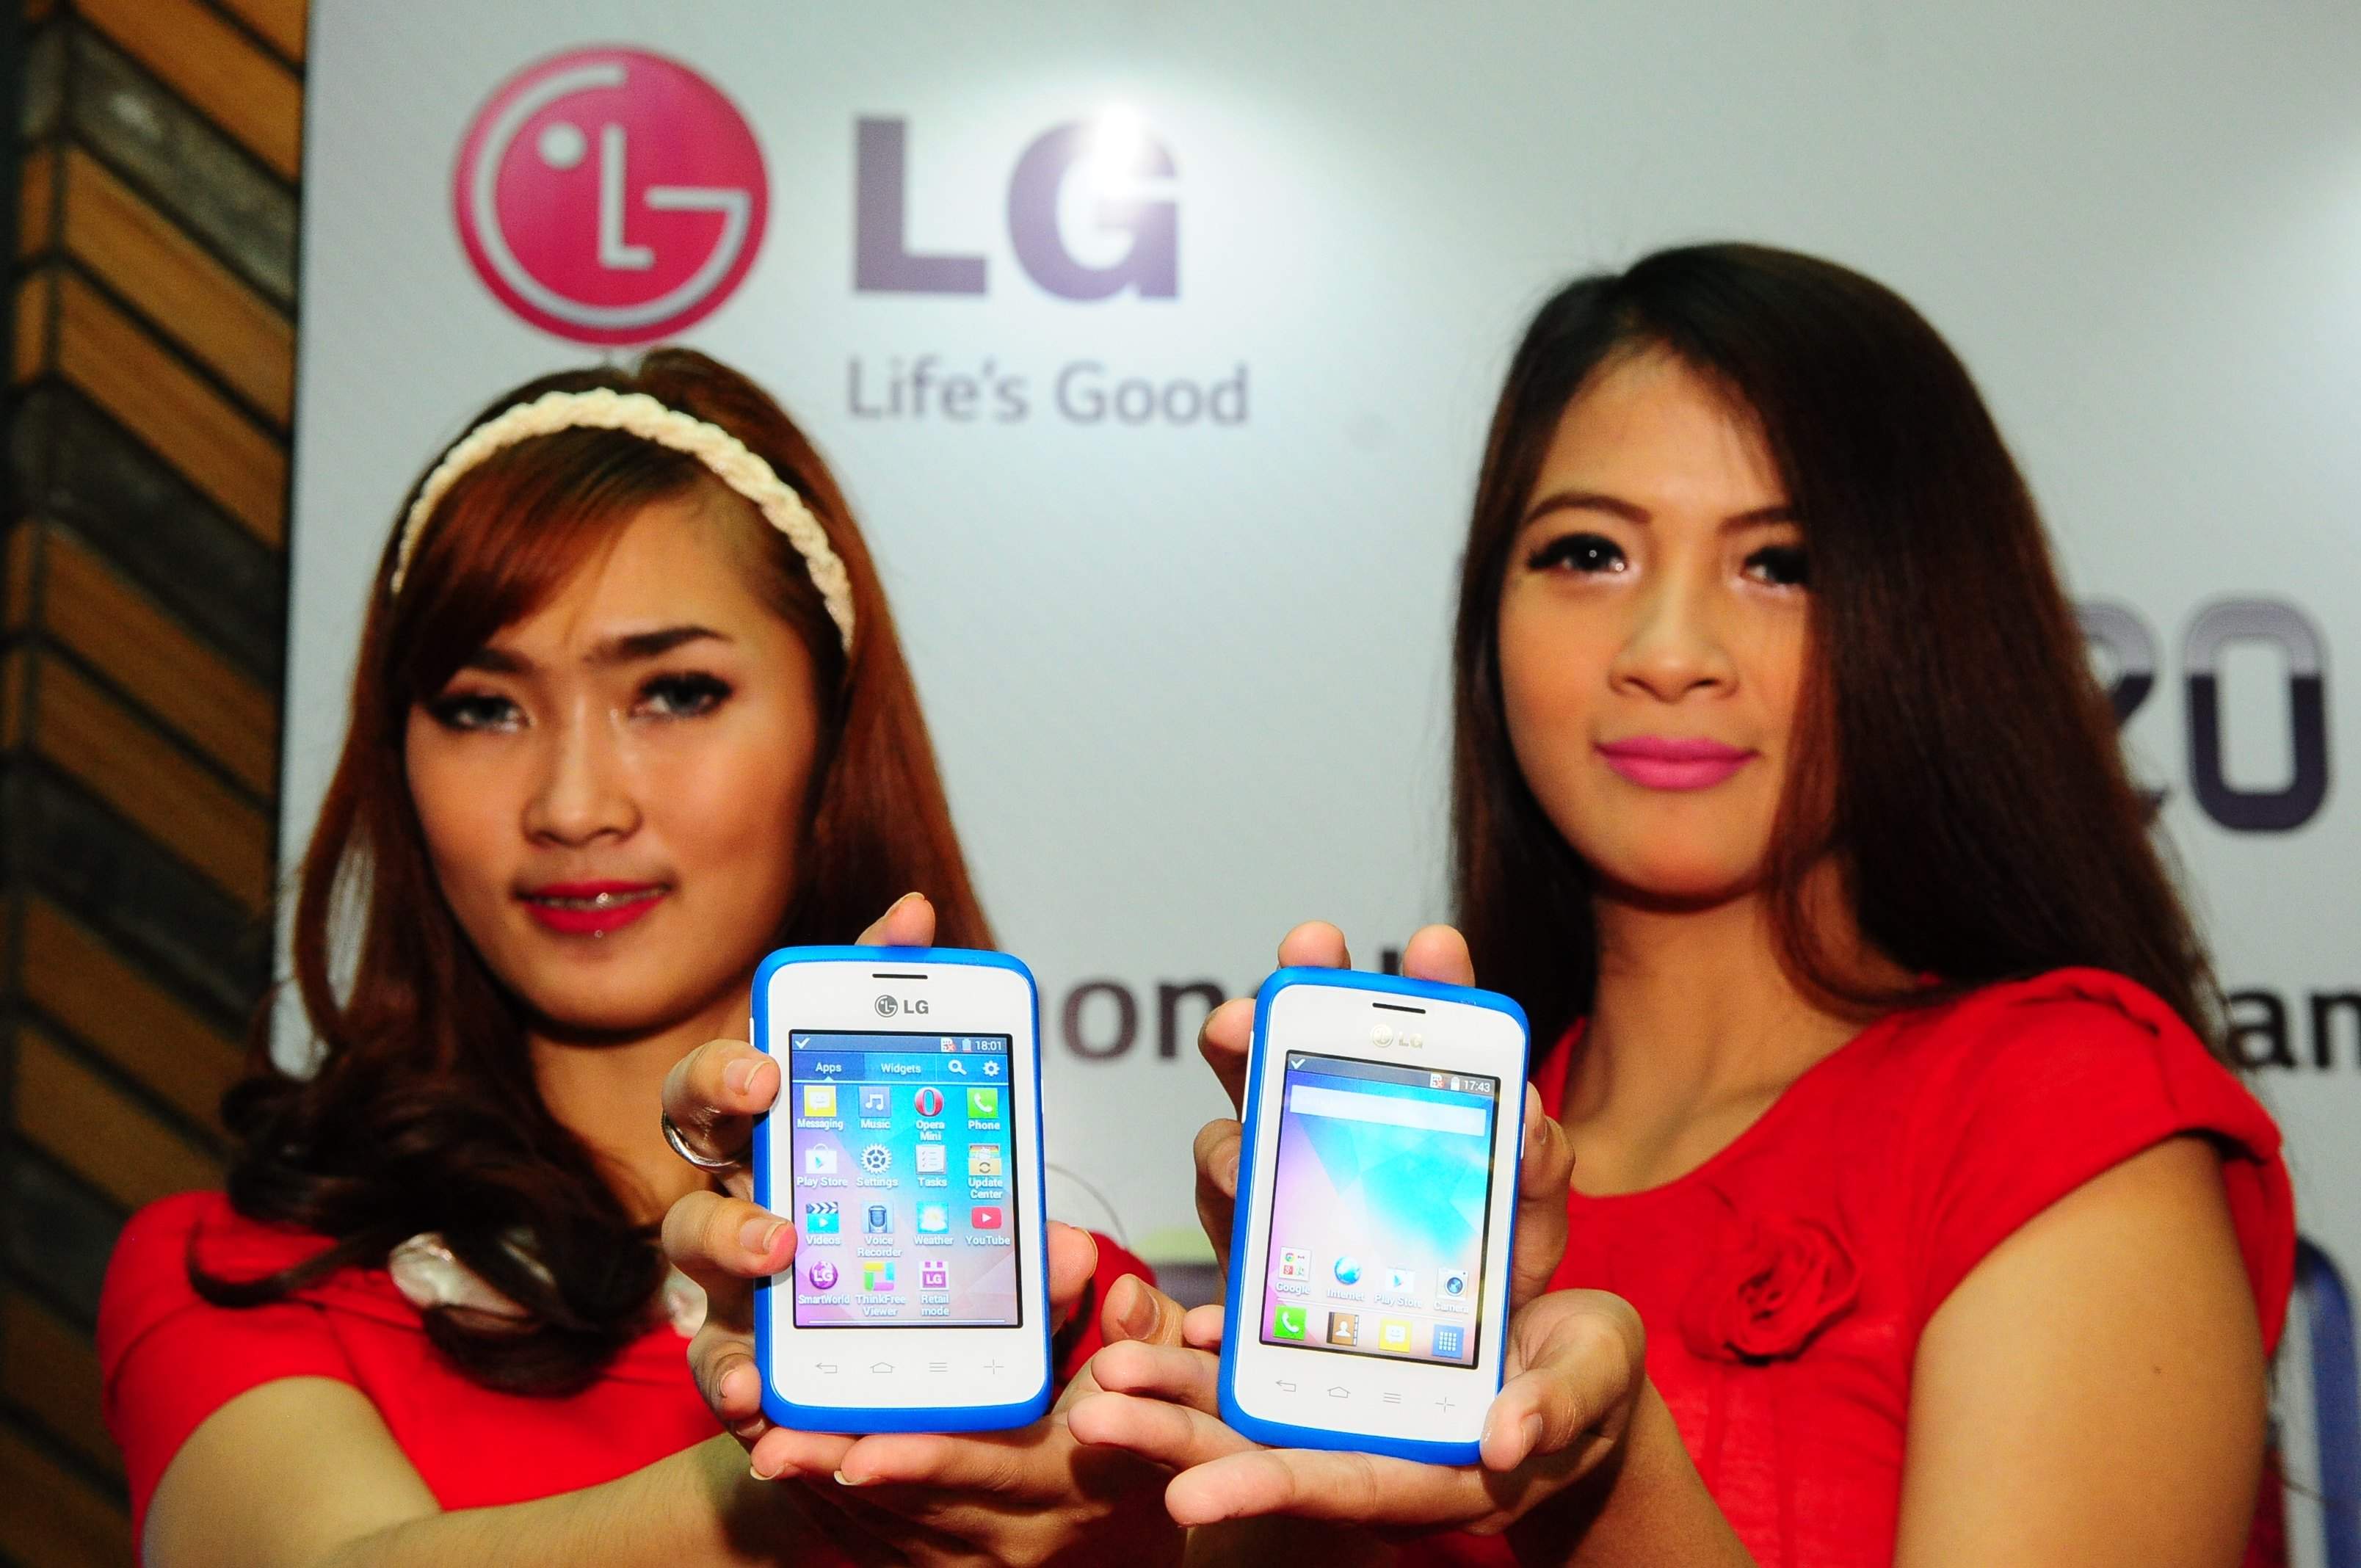  LG Luncurkan L20 di Indonesia, Harga Rp700an Ribu.